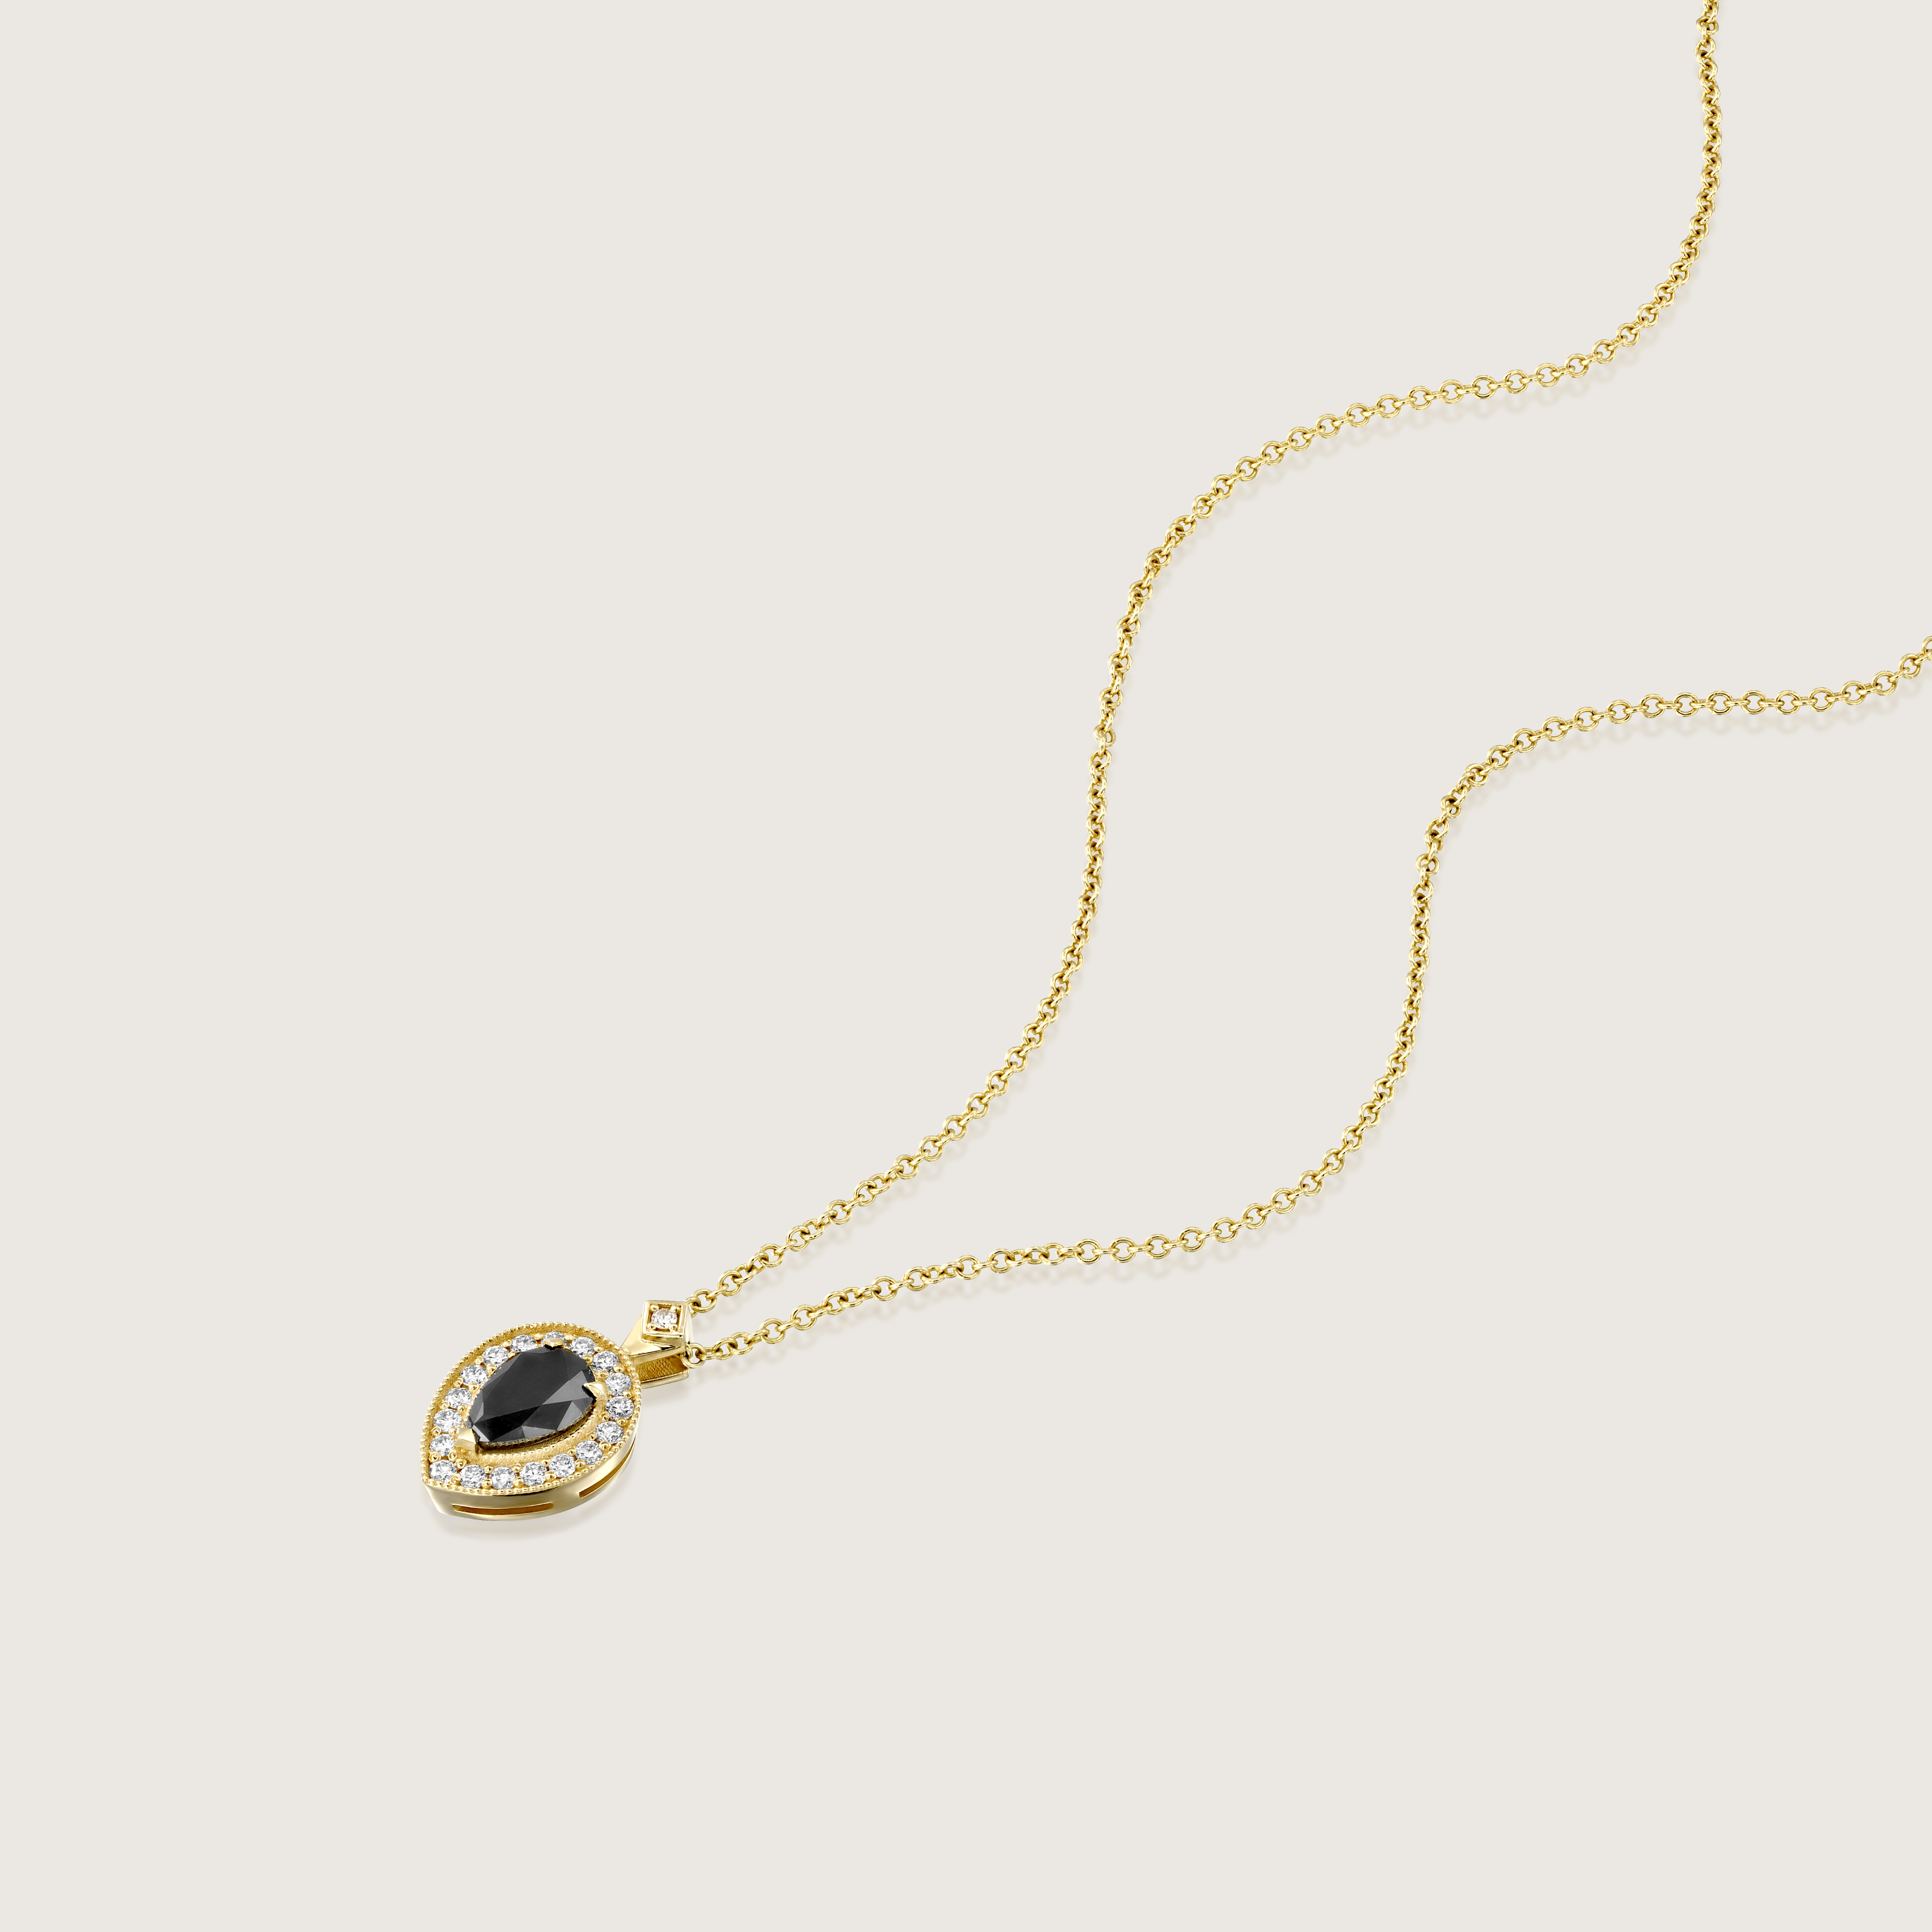 Luna Necklace with Black Diamond